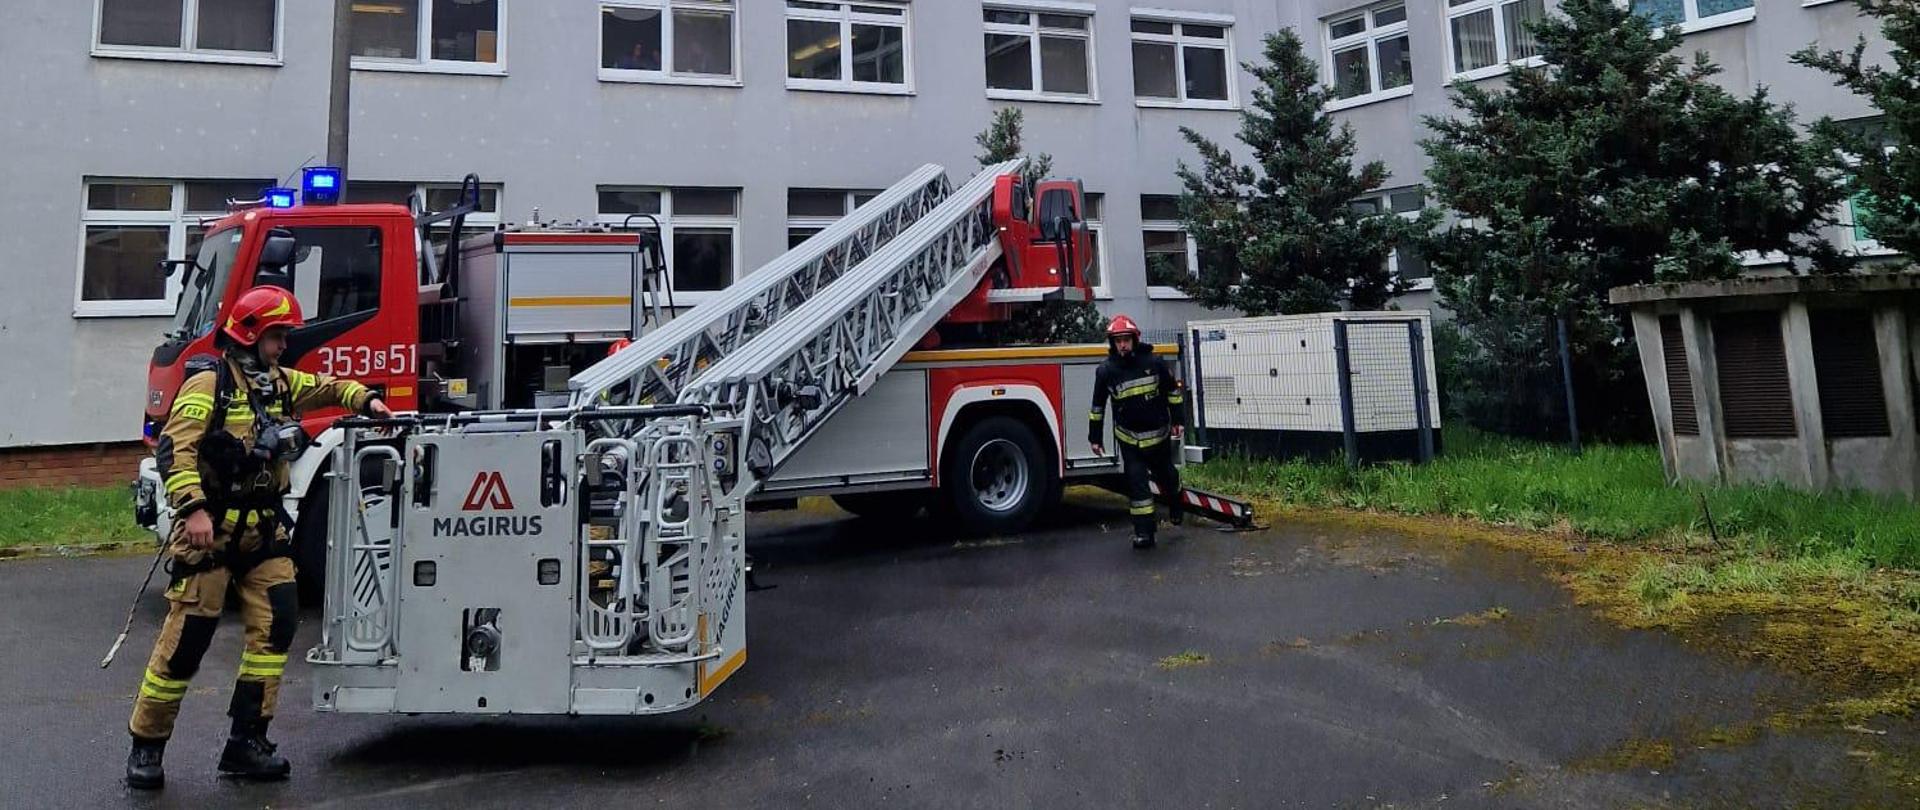 Na zdjęciu strażak podczas rozkładania mechanicznej drabiny pożarniczej stojący w umundurowaniu specjalnym wyposażony w hełm i aparat powietrzny. Scena podczas prowadzonych ćwiczeń.